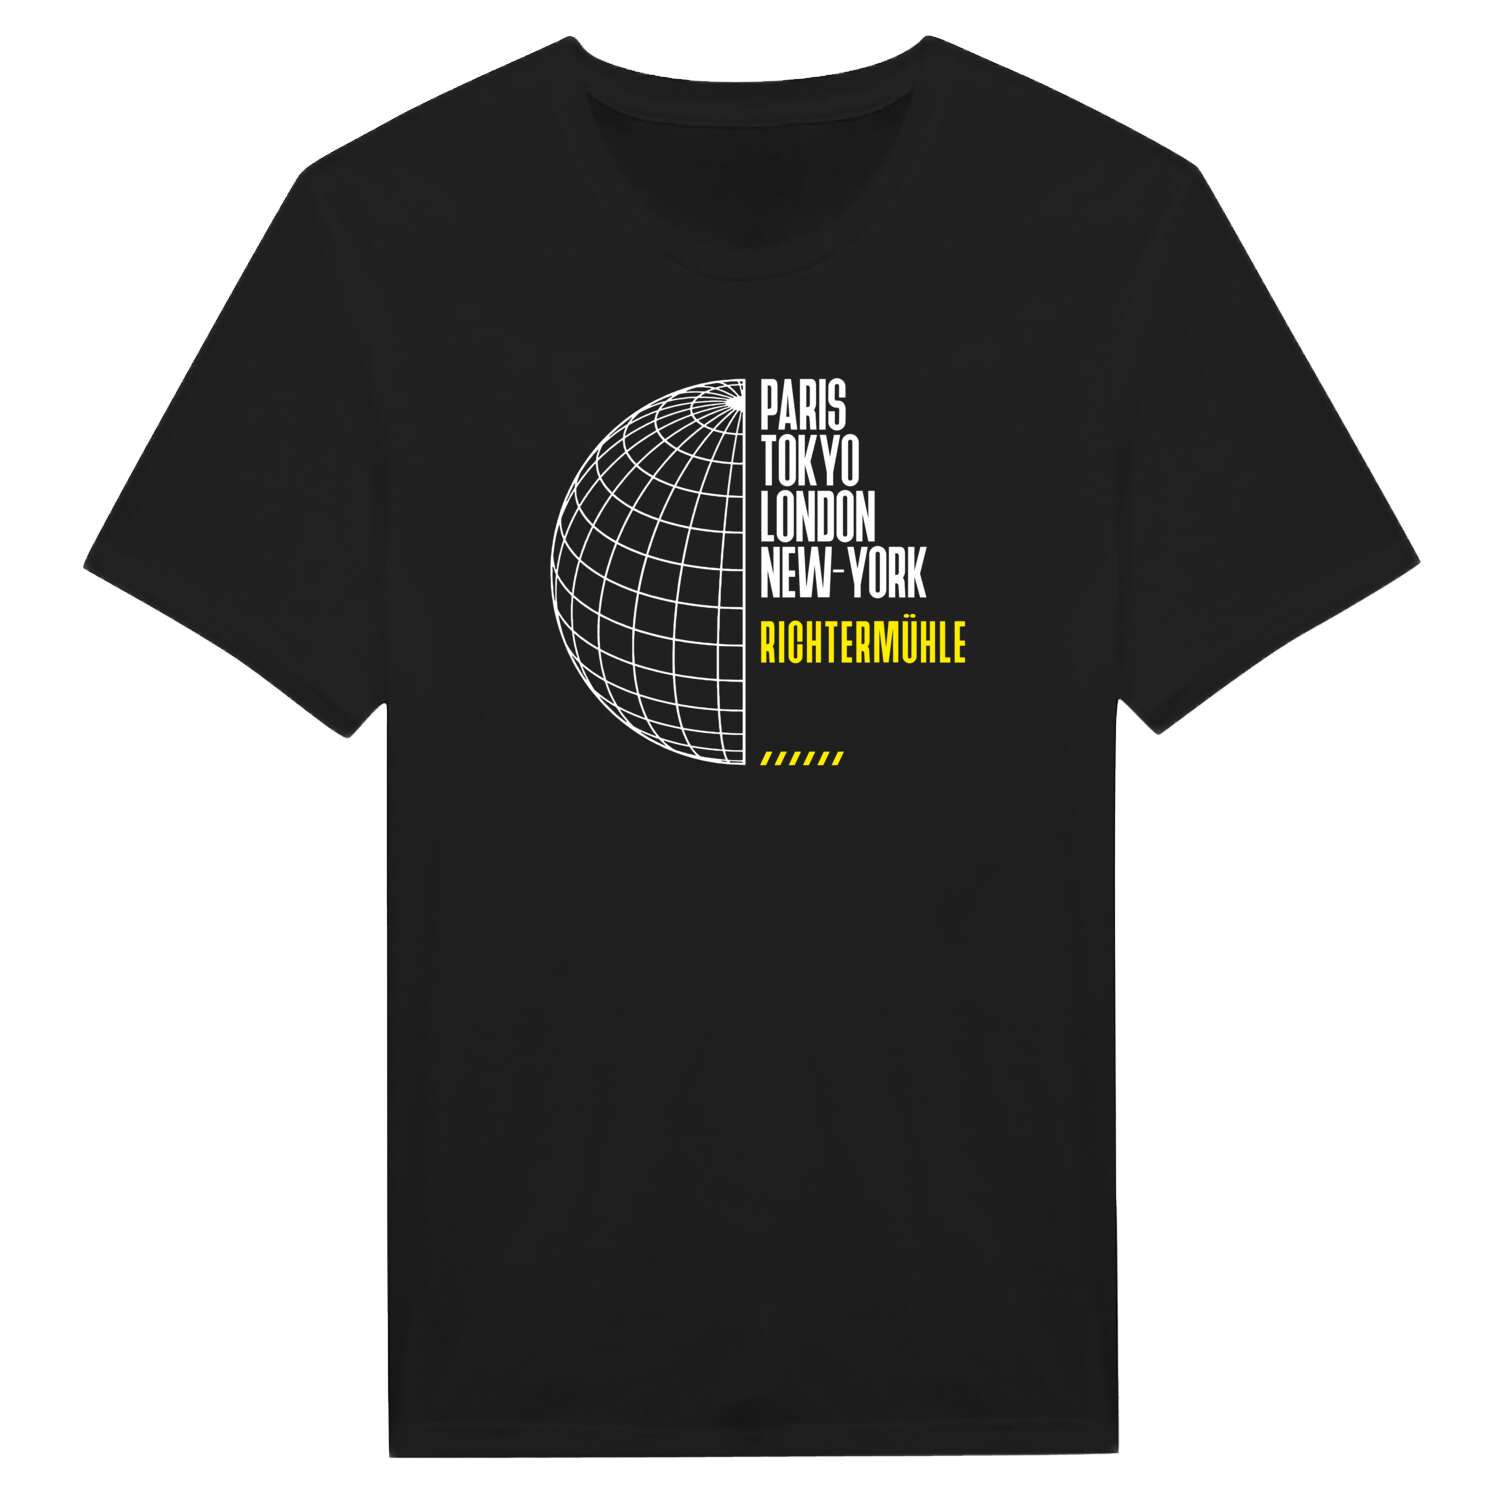 Richtermühle T-Shirt »Paris Tokyo London«